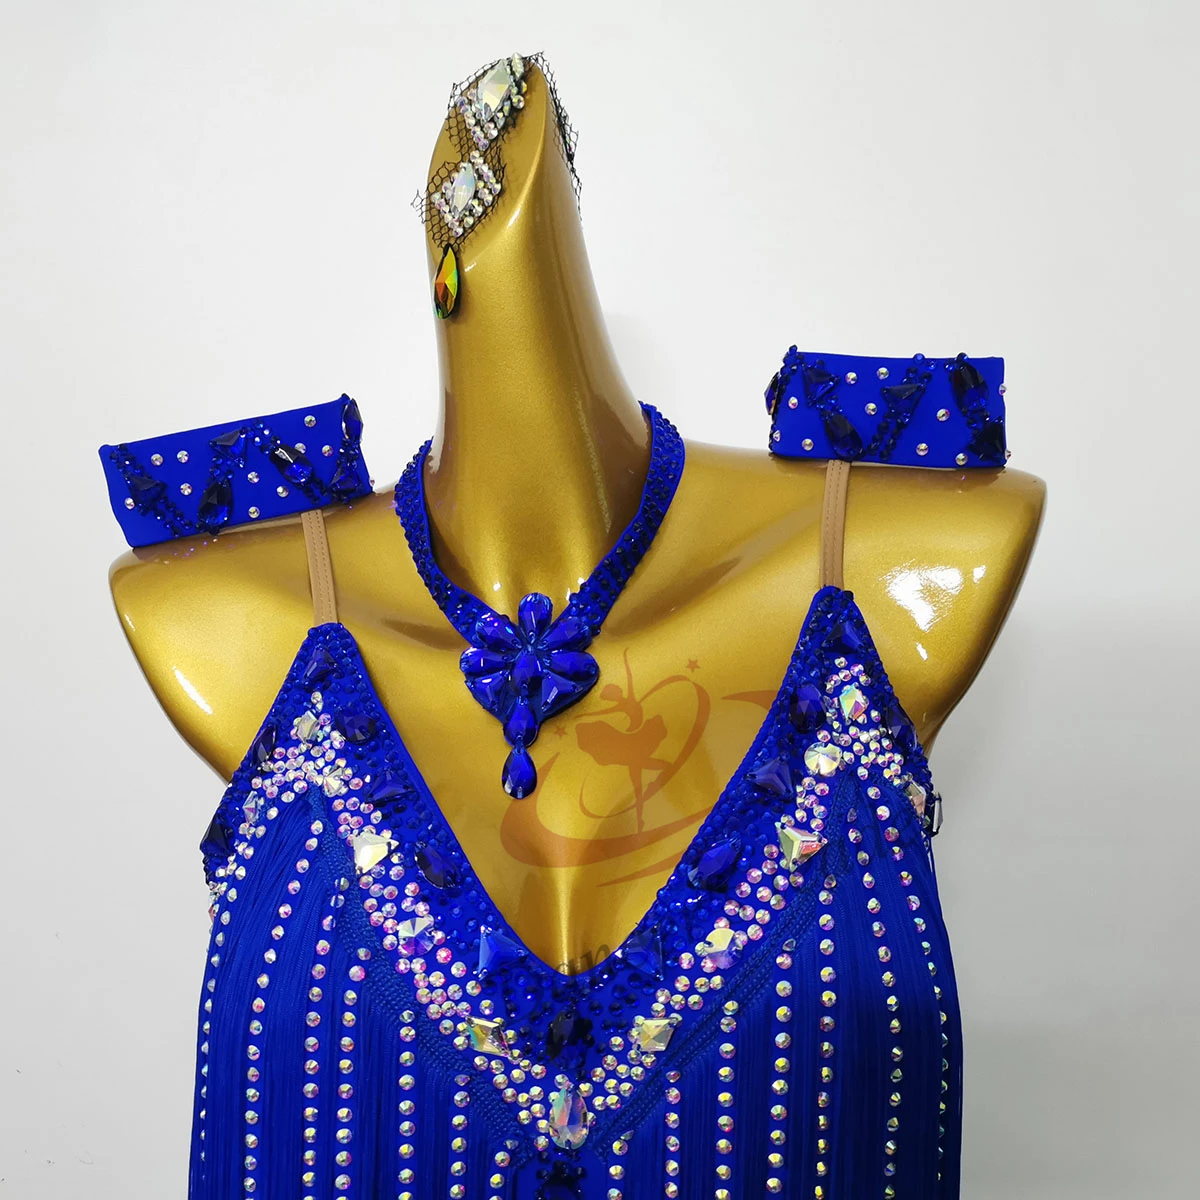 

Стандартная одежда для латиноамериканских танцев, высококачественное специализированное платье для танцев самбы, румбы, со сверкающими бриллиантами и кисточками